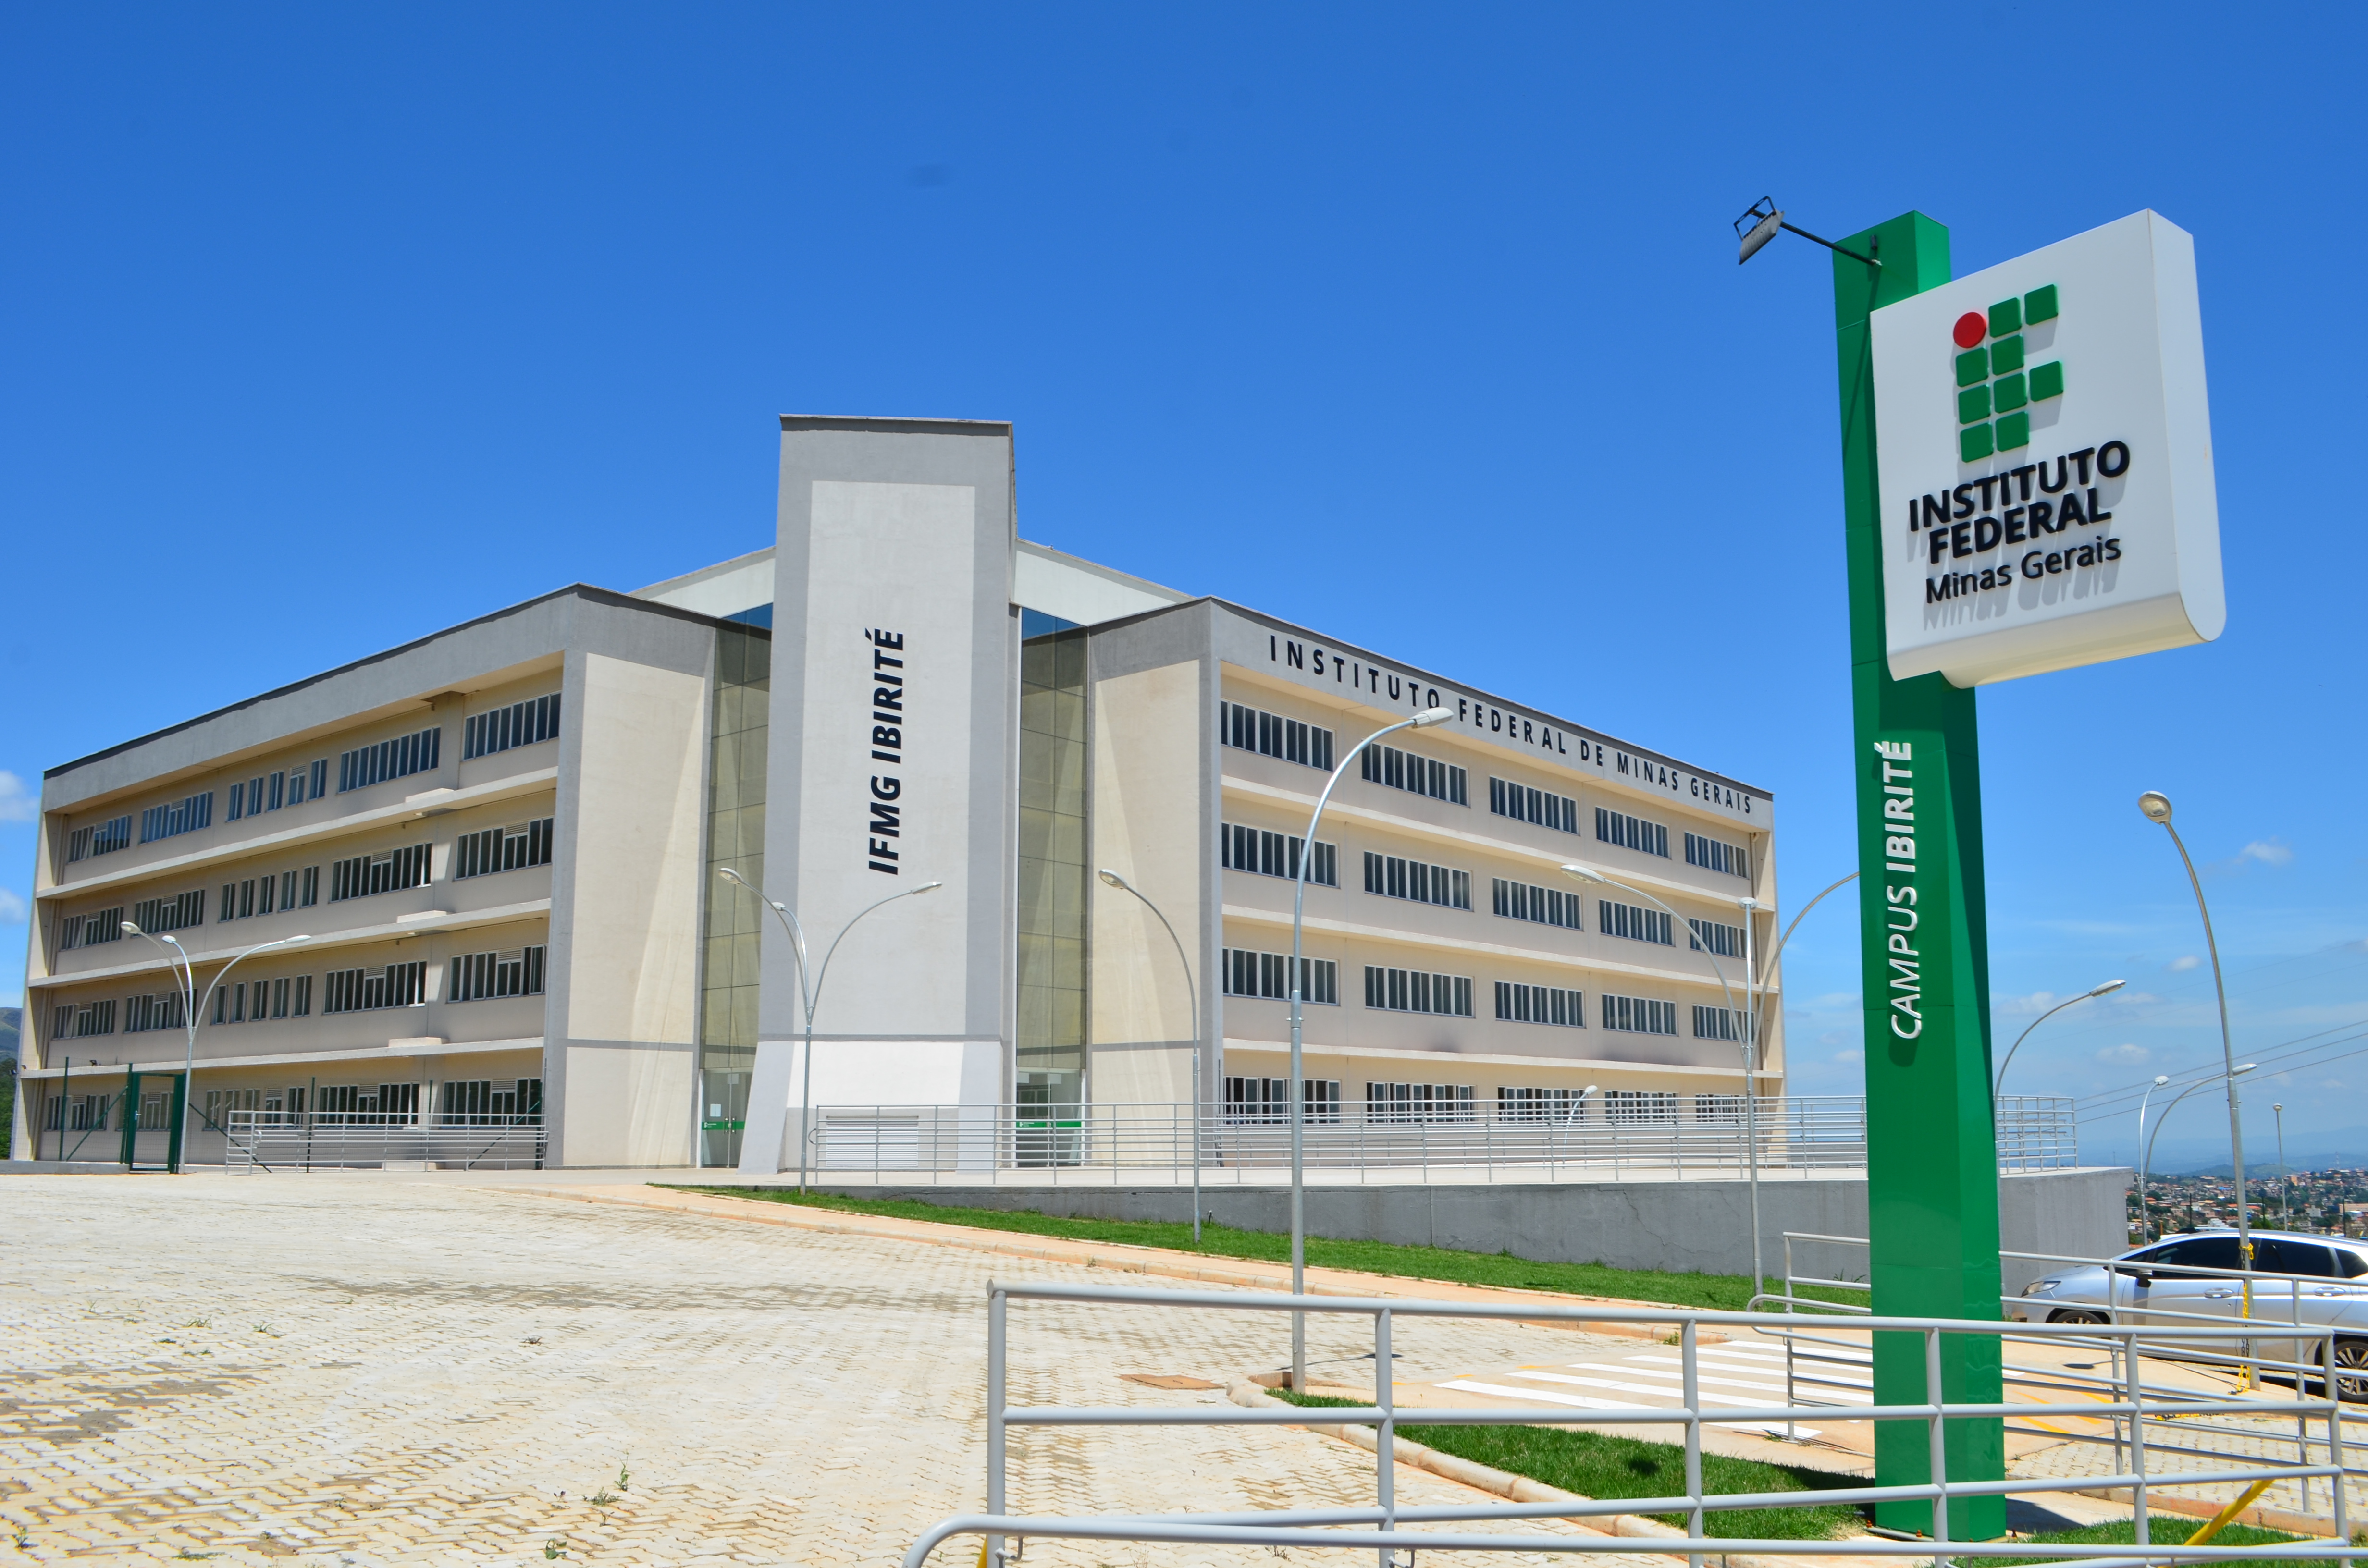 Instituto Federal de Minas Gerais